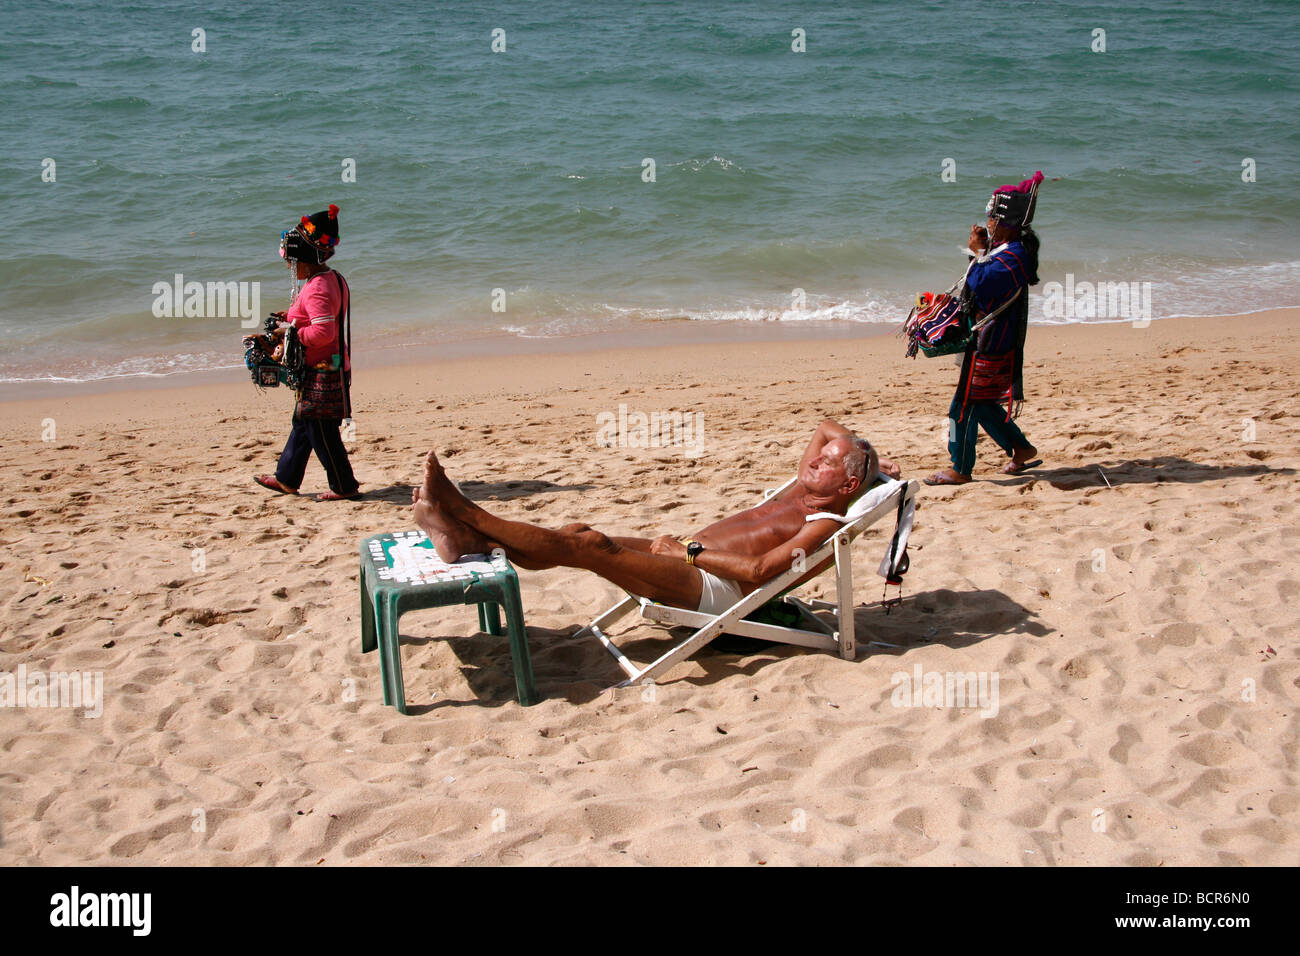 Maschio di relax sulla spiaggia spiaggia di Pattaya in Thailandia con i venditori sulla spiaggia Foto Stock